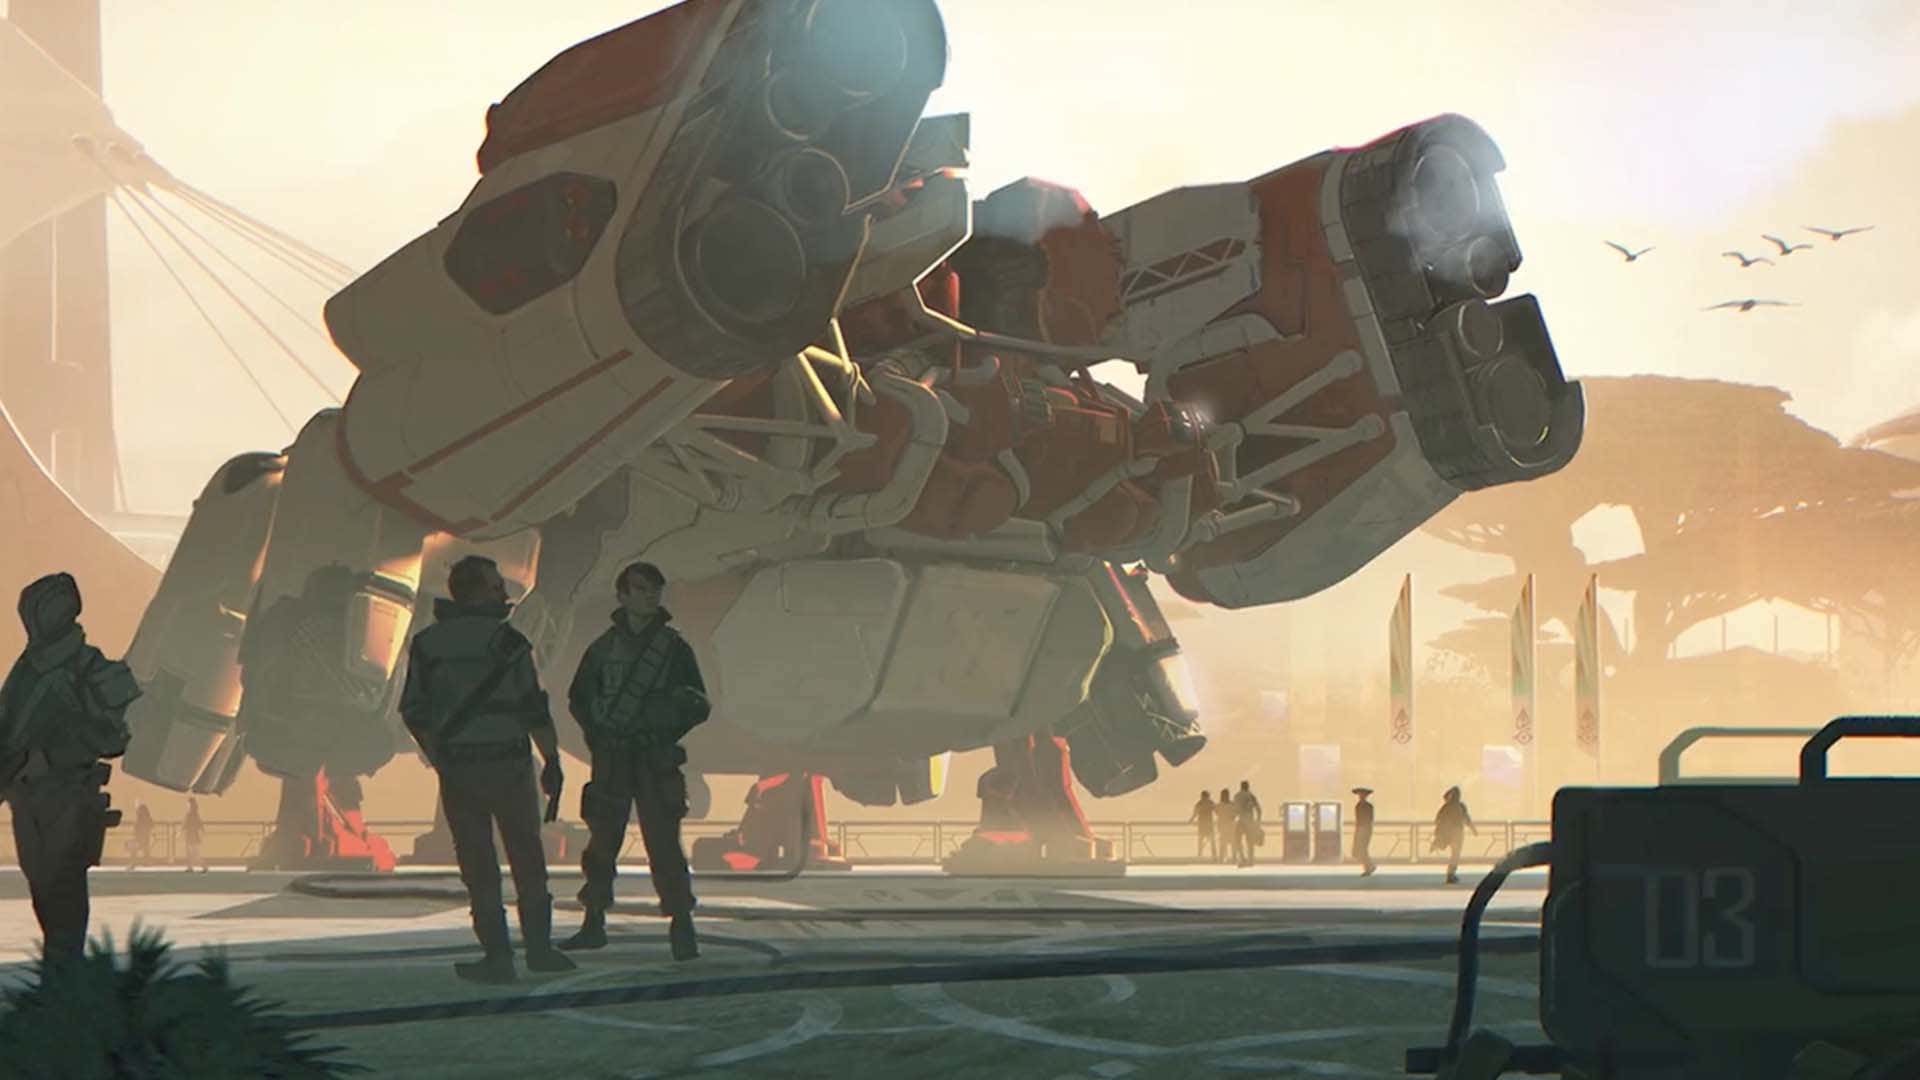 Ein Bild zeigt ein großes Raumschiff, das auf einer Landeplattform in der Nähe einiger Menschen ruht. 